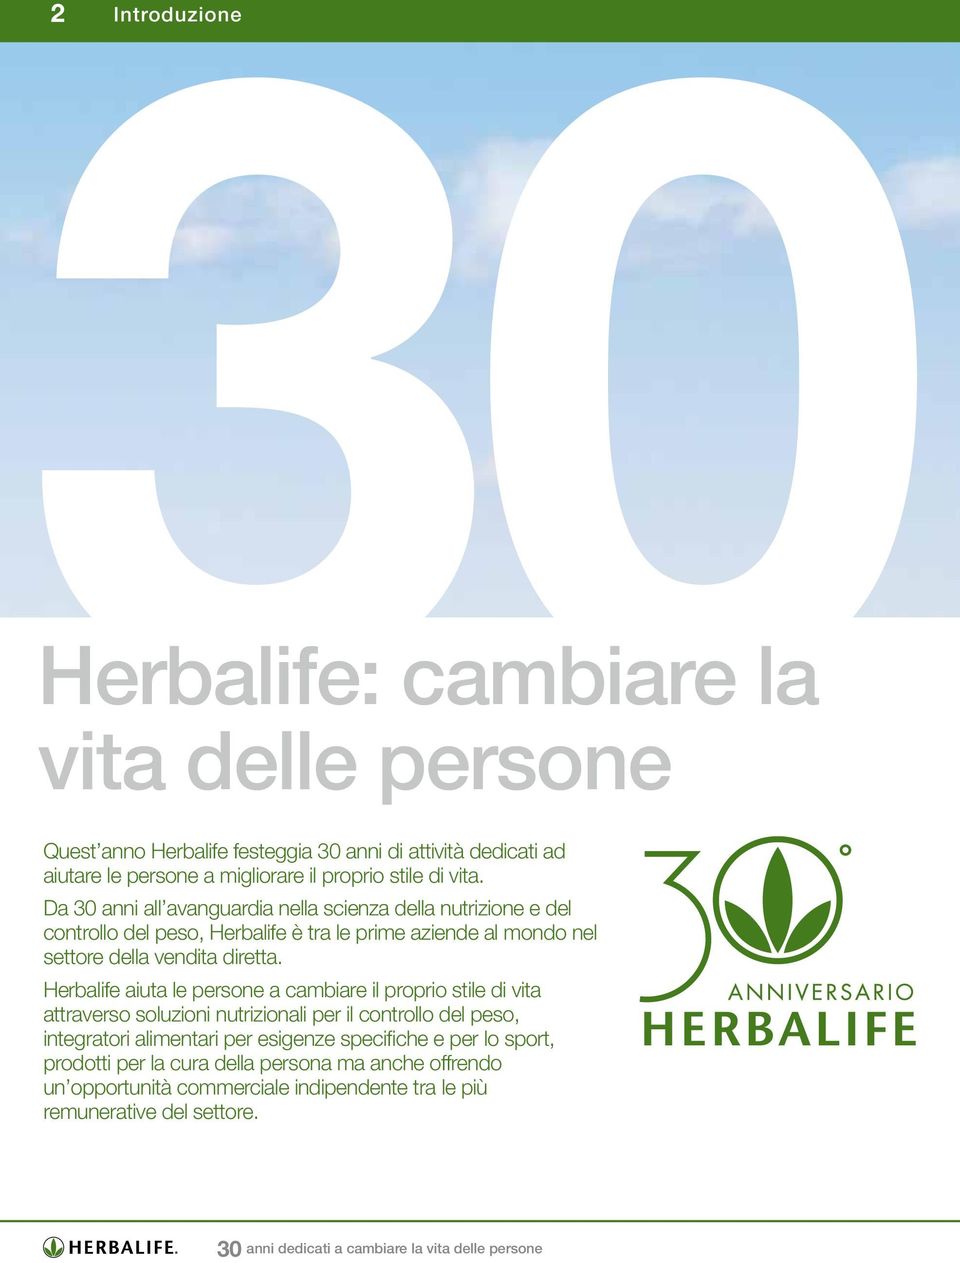 Herbalife aiuta le persone a cambiare il proprio stile di vita attraverso soluzioni nutrizionali per il controllo del peso, integratori alimentari per esigenze specifiche e per